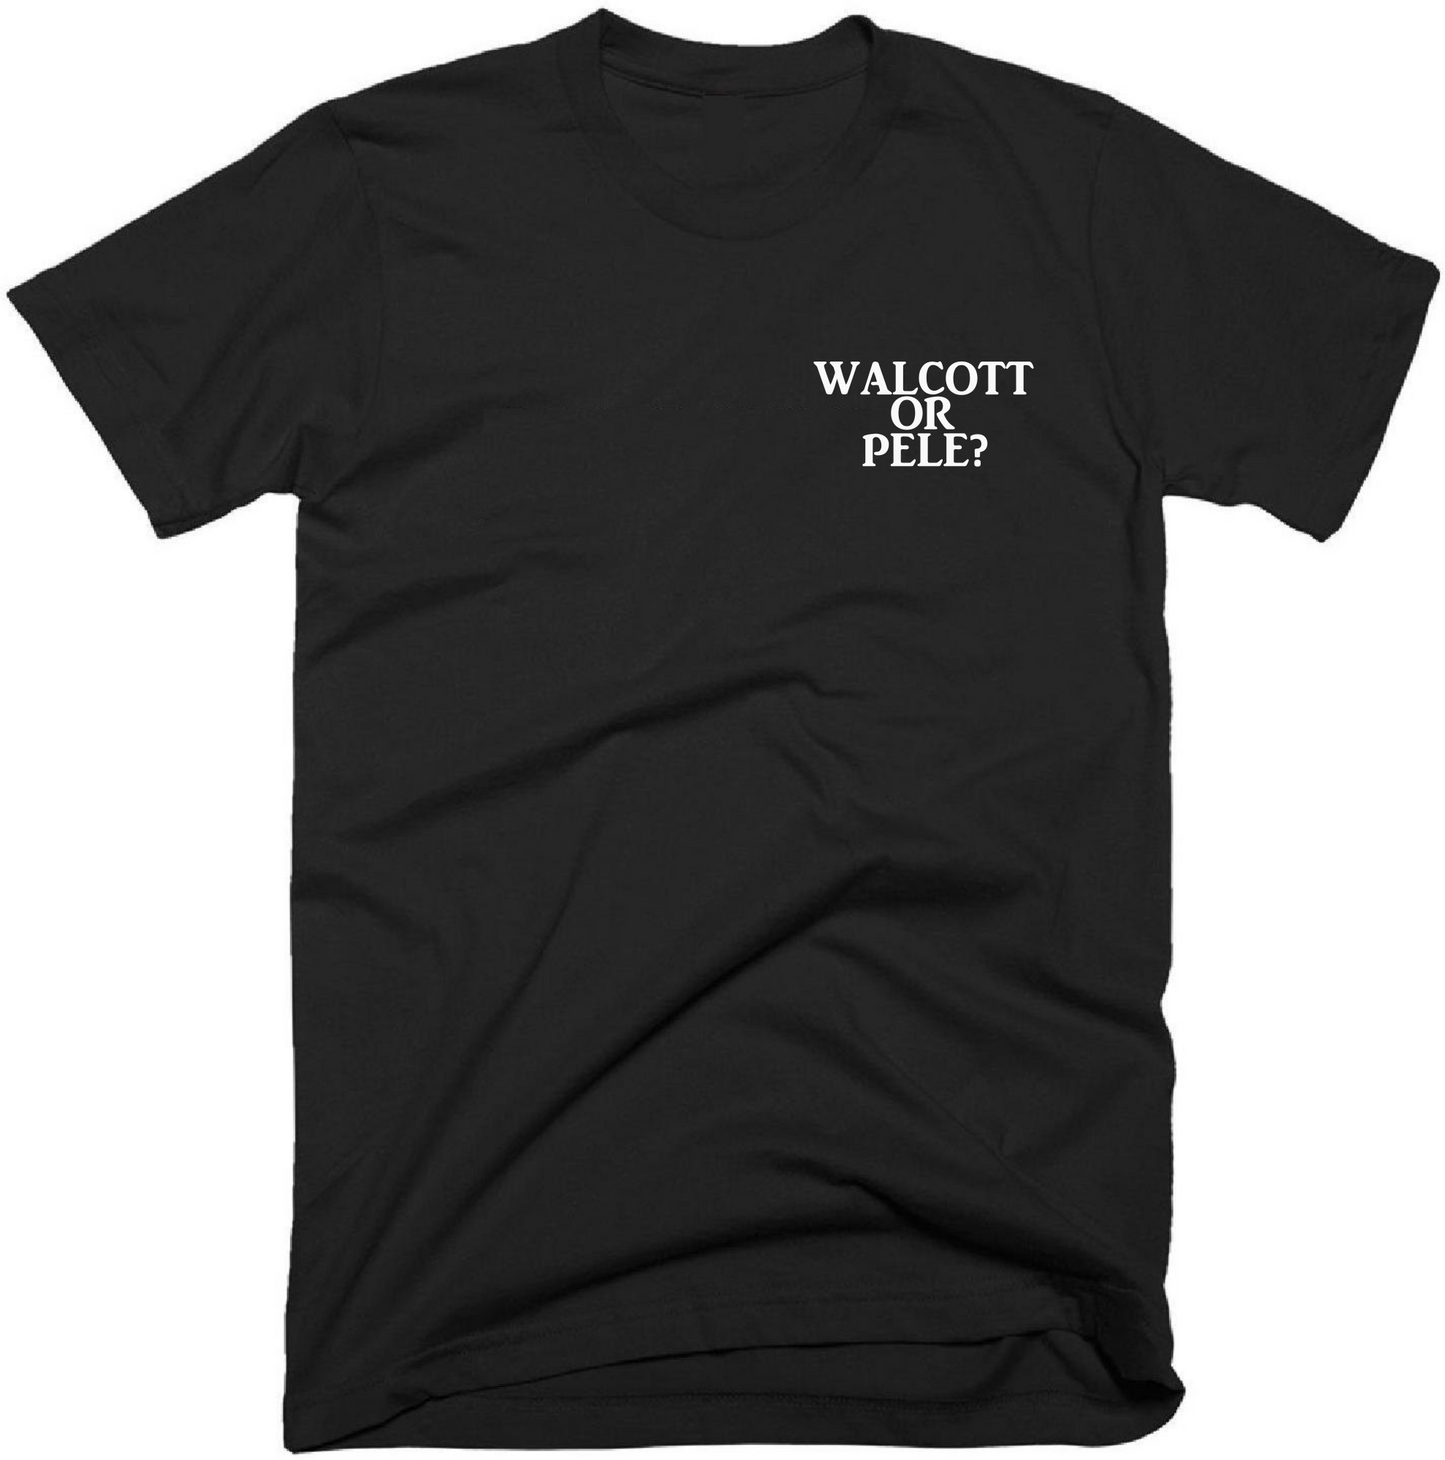 Walcott or Pele? - Chest Pocket Design T-Shirt